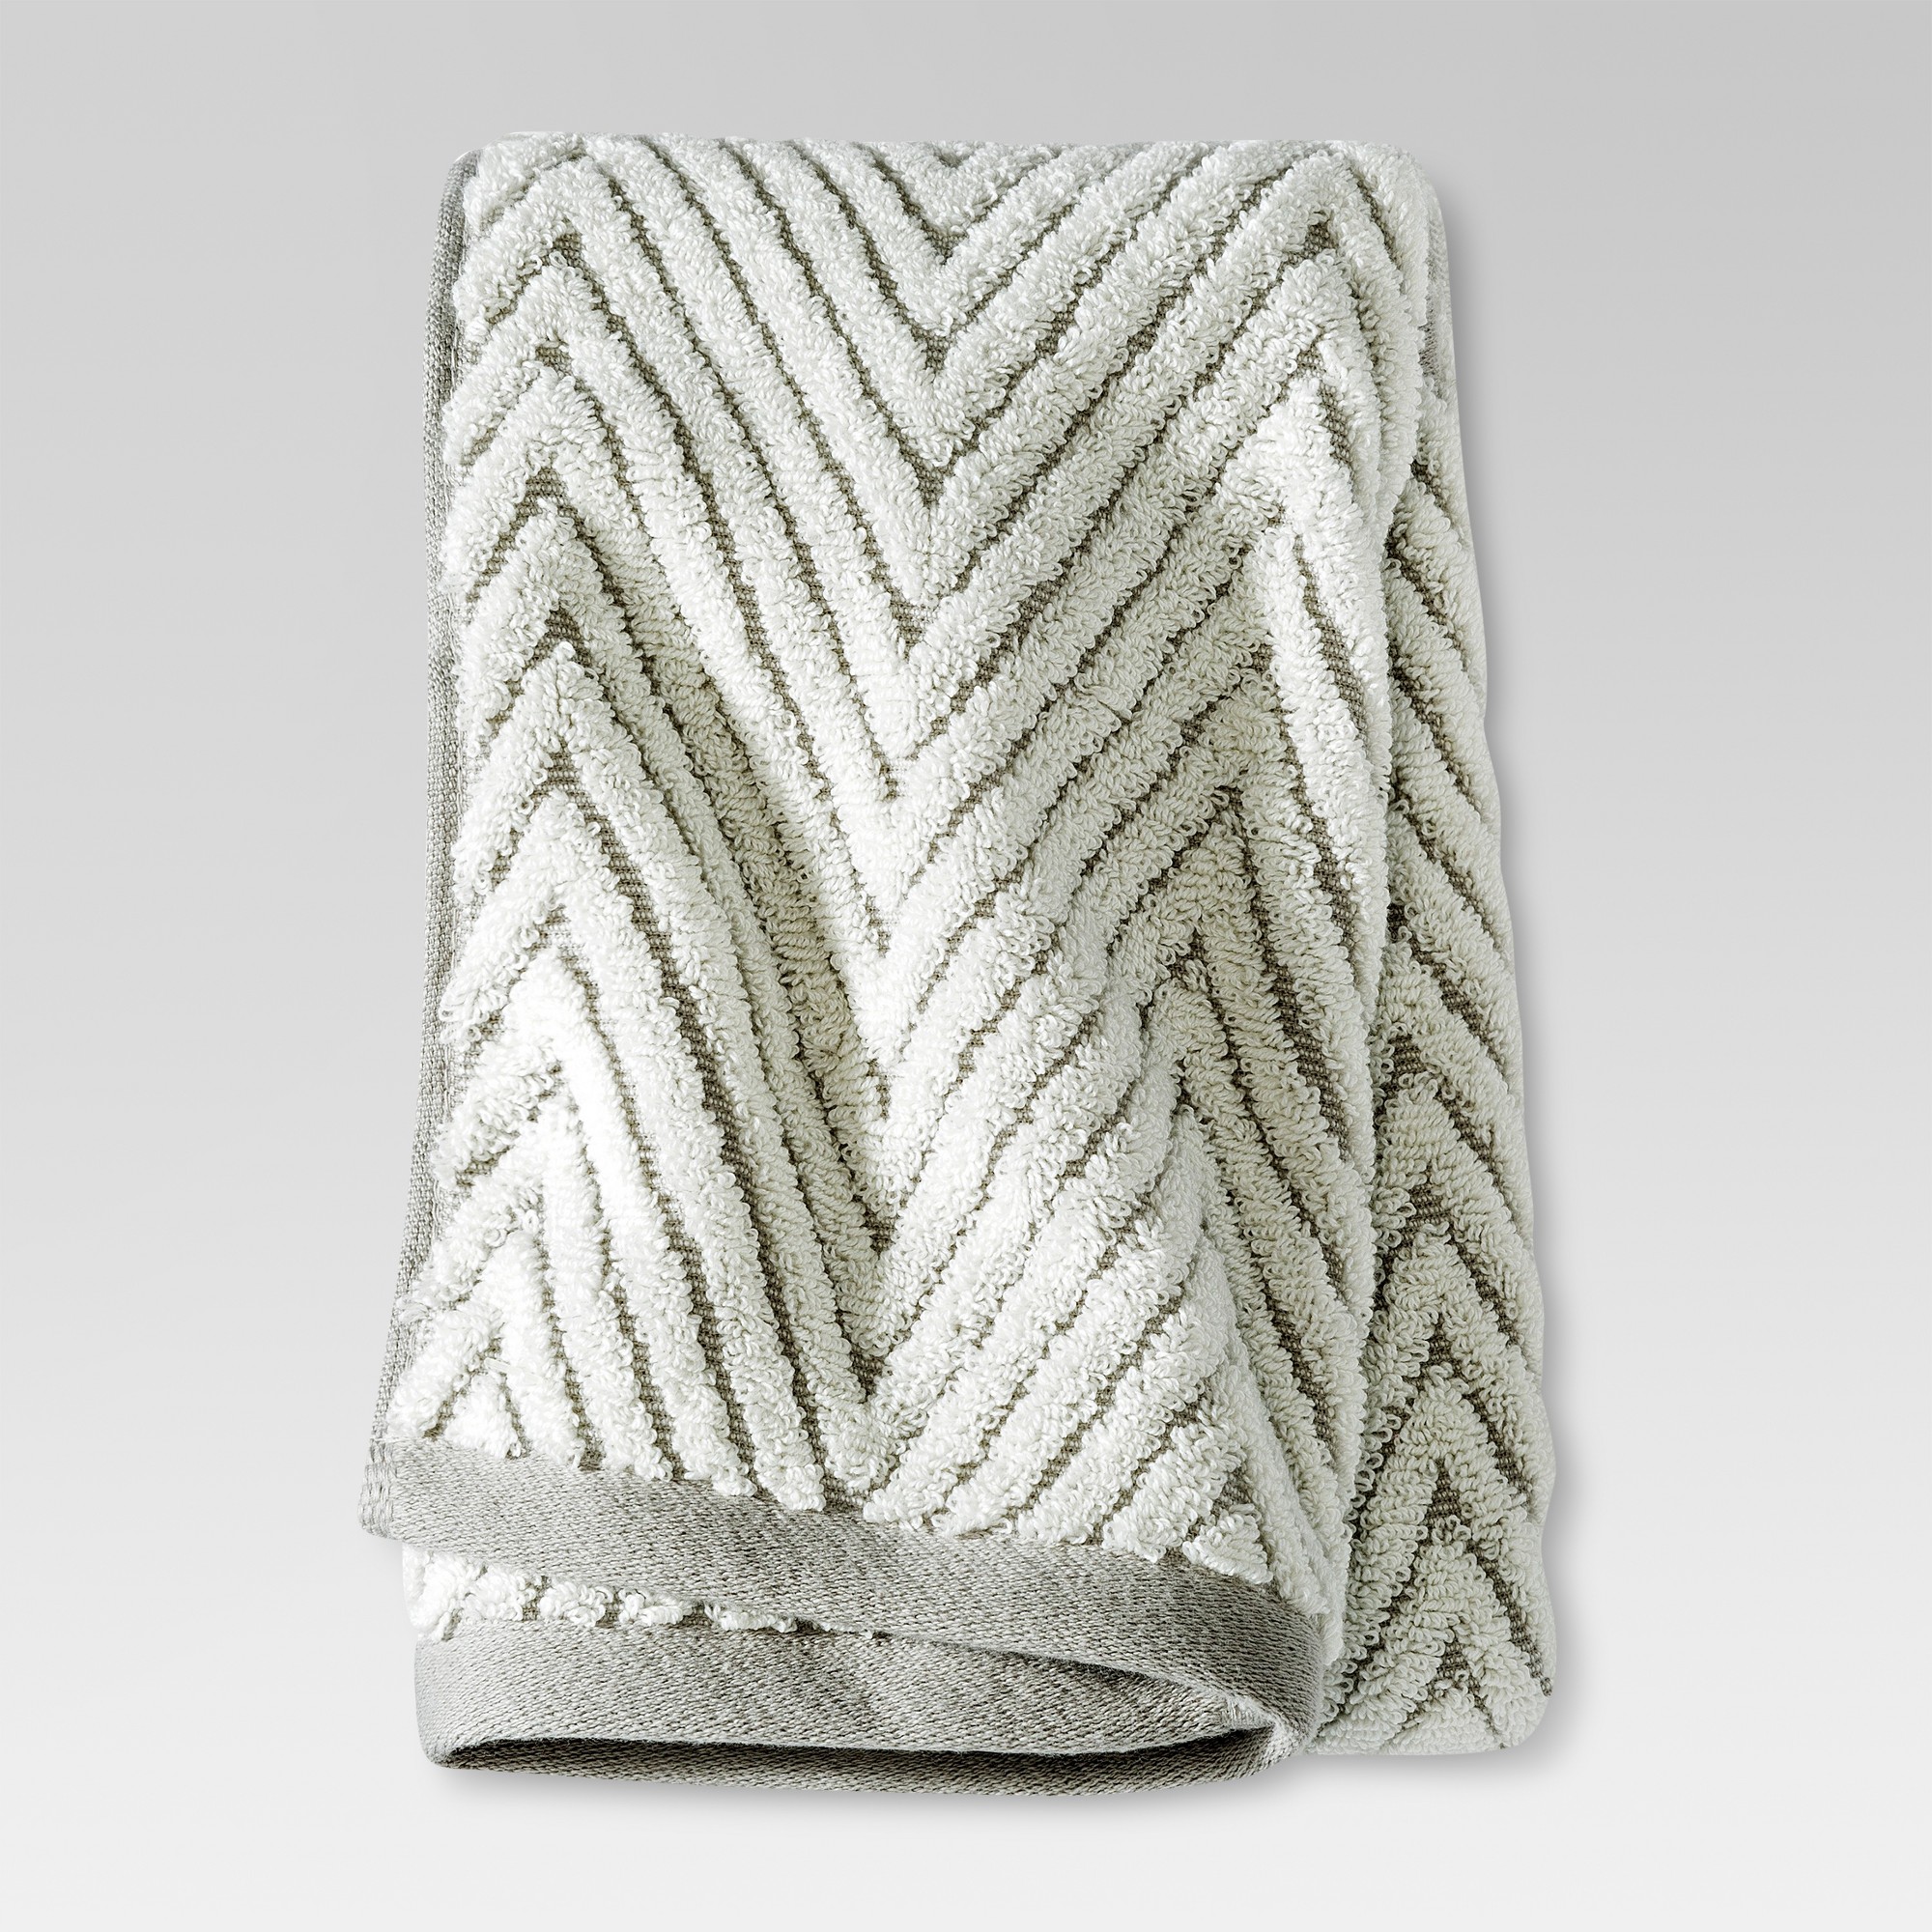 Chevron Textured Hand Towel Cream/Gray - Threshold , White Gray